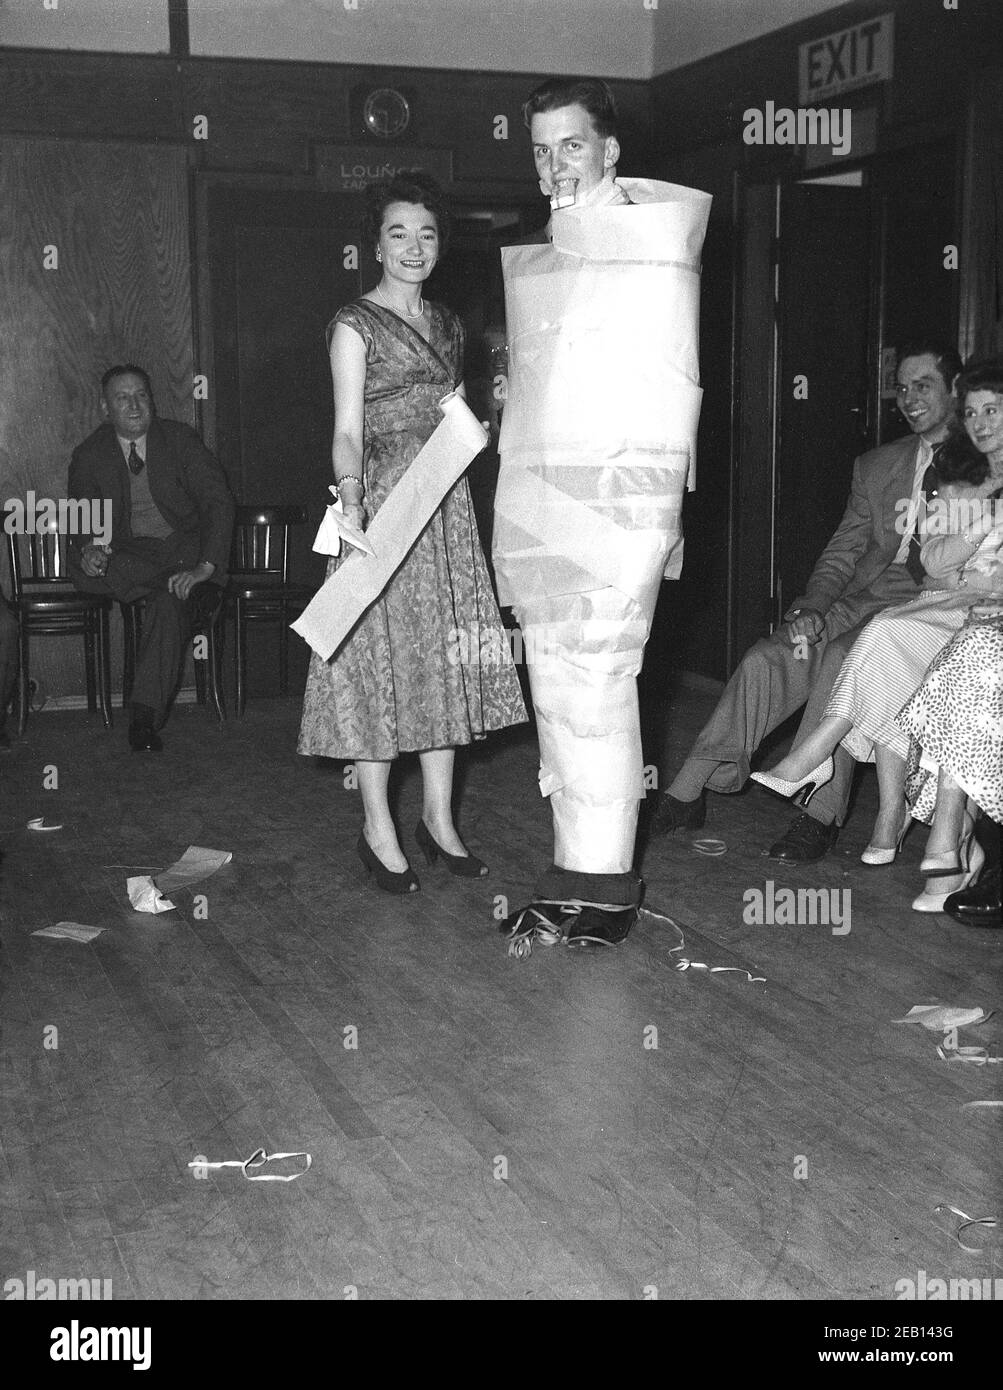 Dans les années 1950, historique, lors d'une fête d'anniversaire dans une salle de réception d'un hôtel, un grand jeune homme debout à côté d'une femme s'est enveloppé de papier marron dans le cou pour se faire un petit cadeau dans sa bouche, un jeu de fête de cette époque sans aucun doute, Angleterre, Royaume-Uni. La dame debout à côté de lui tient un rouleau de papier probablement ayant fait l'acte elle-même. Banque D'Images